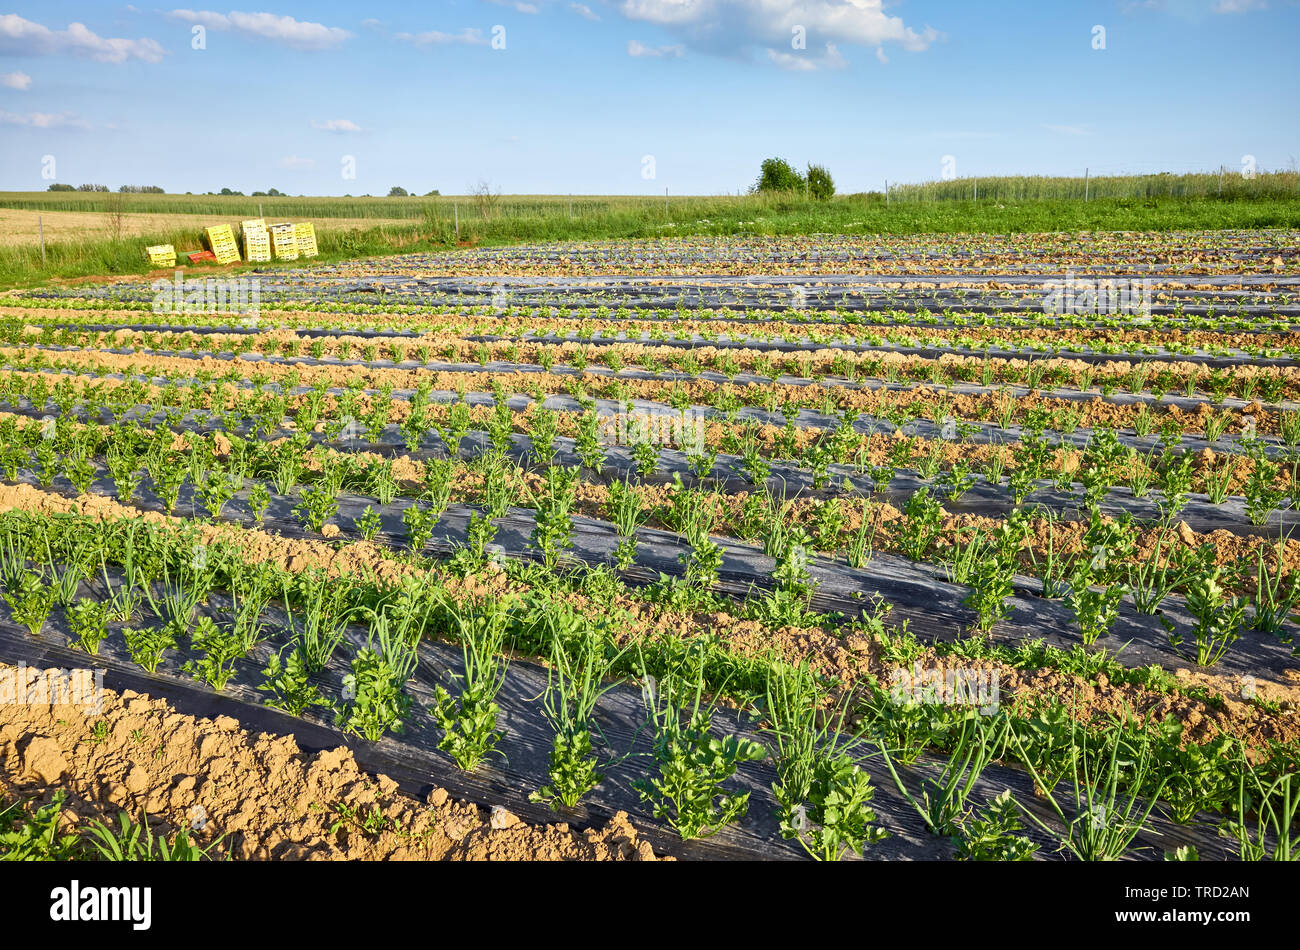 Landwirtschaftliche Landschaft mit organischen Sellerie und Schnittlauch Bauernhof Feld mit Patches mit Kunststoff Laubdecke benutzt Unkraut zu unterdrücken und Wasser zu sparen. Stockfoto